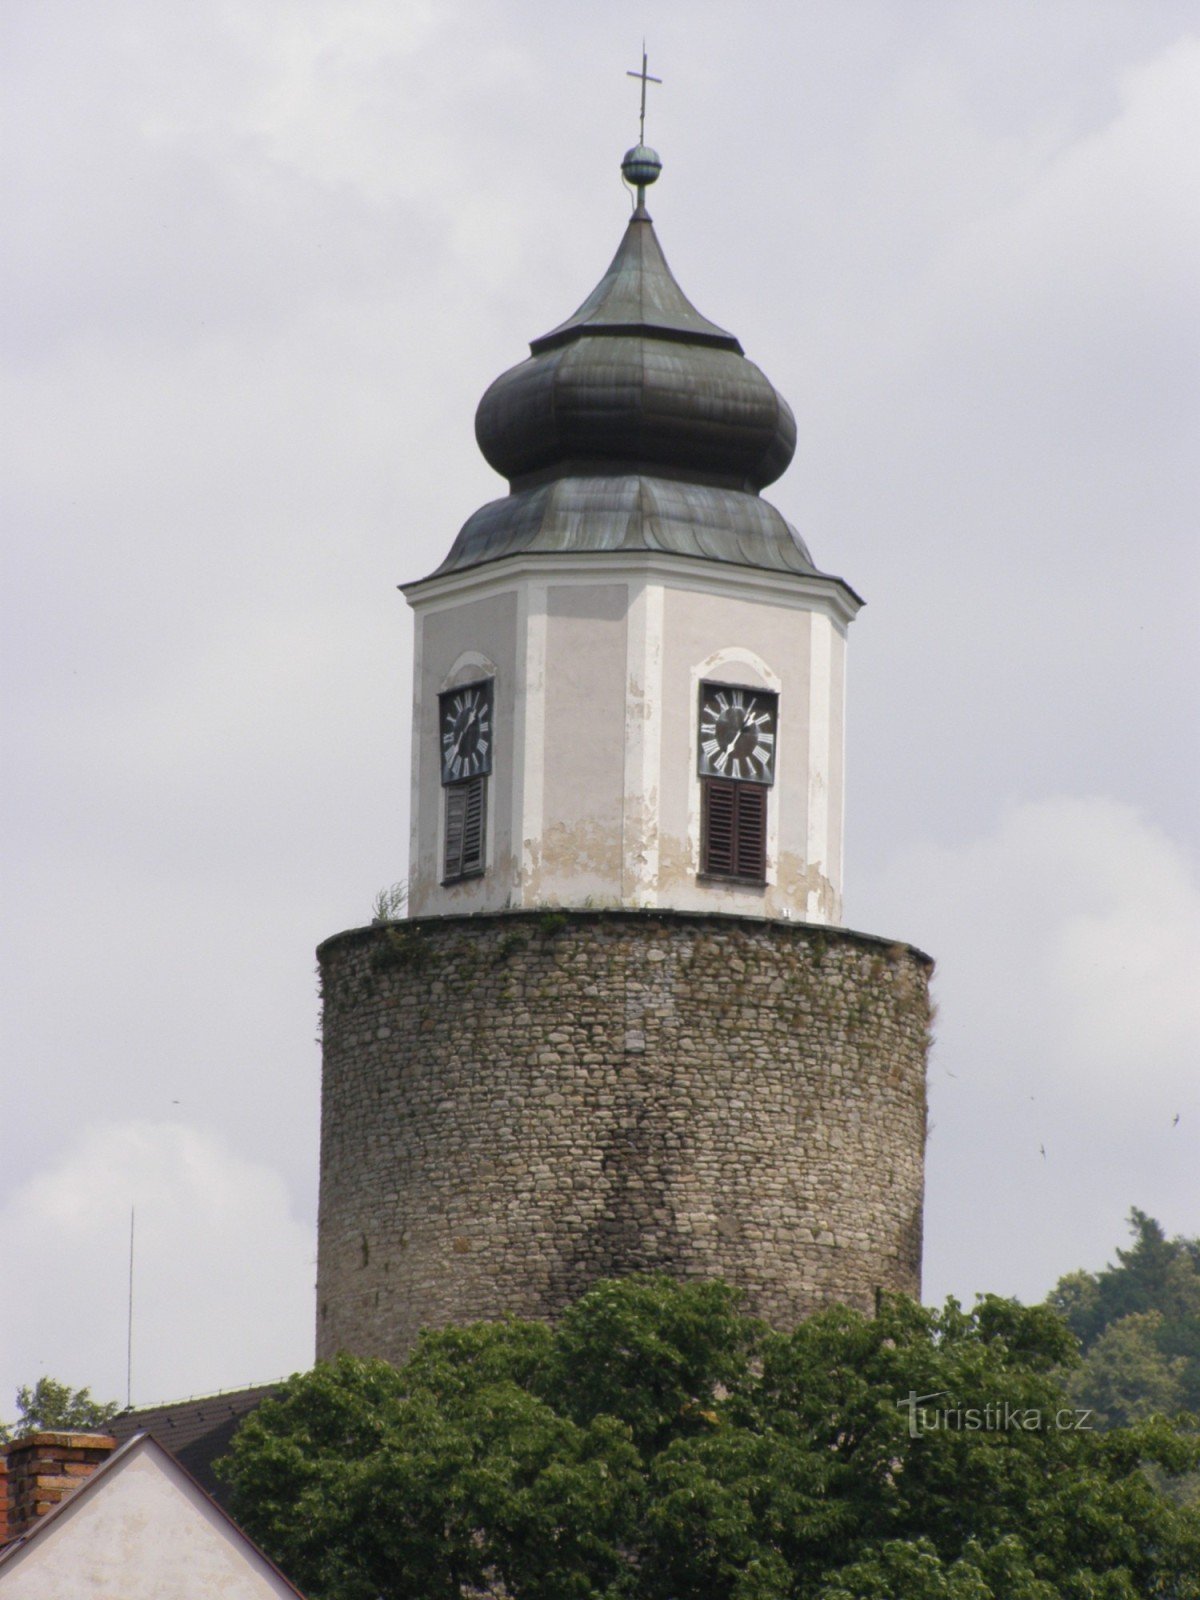 Žulová - Church of St. Joseph with the castle tower